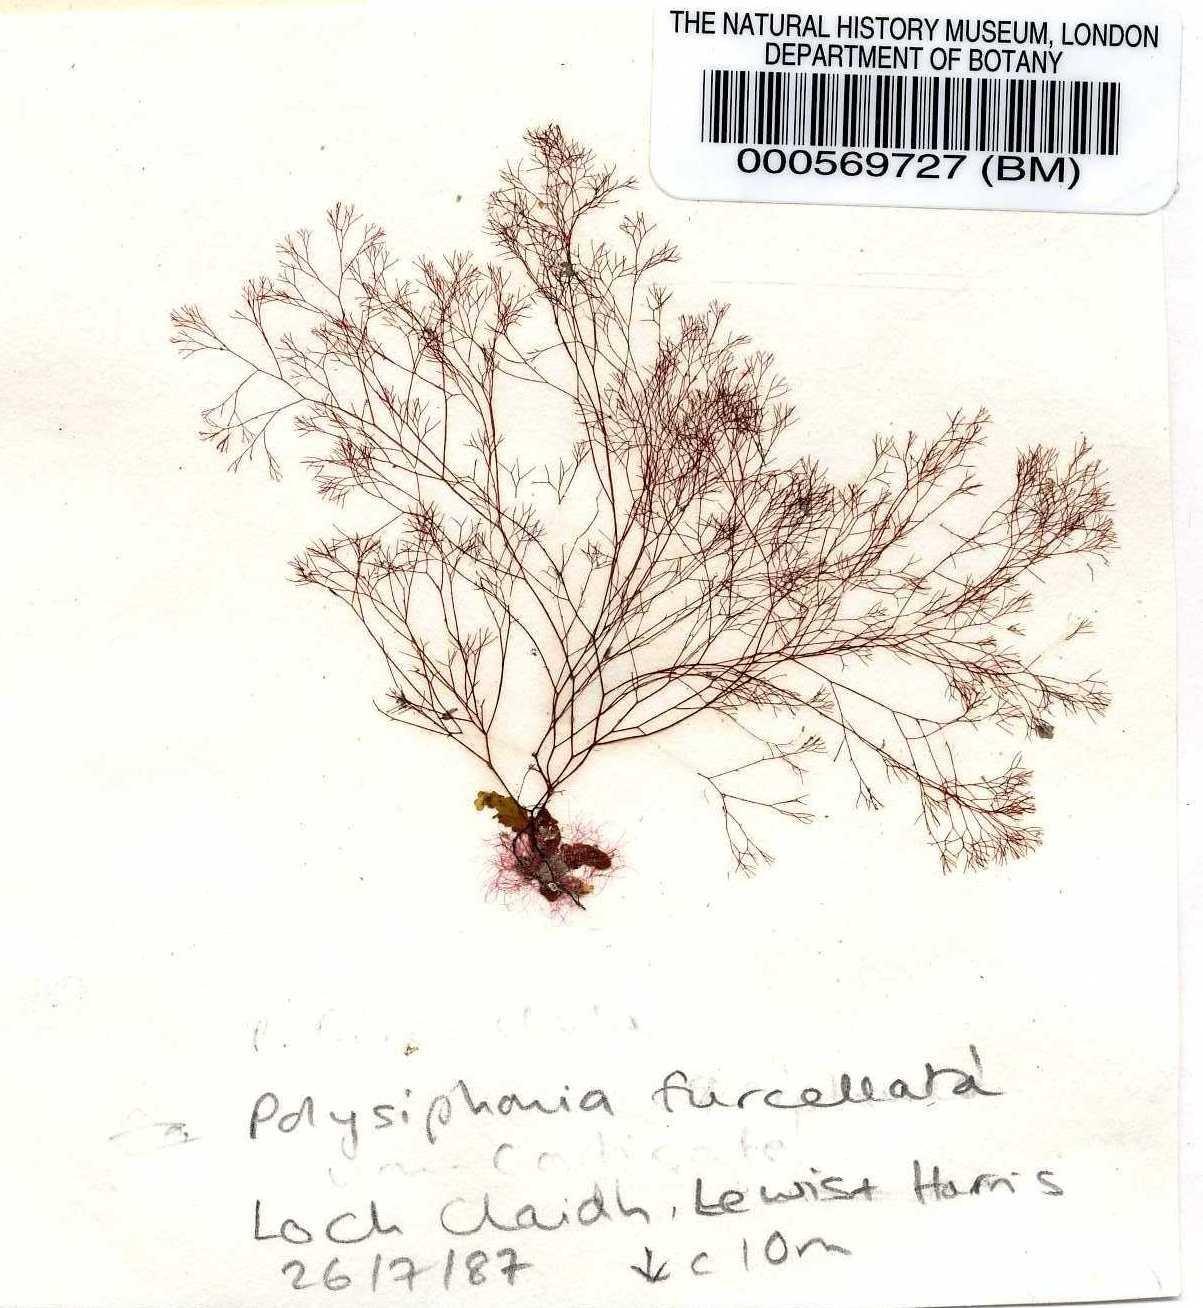 To NHMUK collection (Polysiphonia furcellata (C.Agardh) Harv.; NHMUK:ecatalogue:4787883)